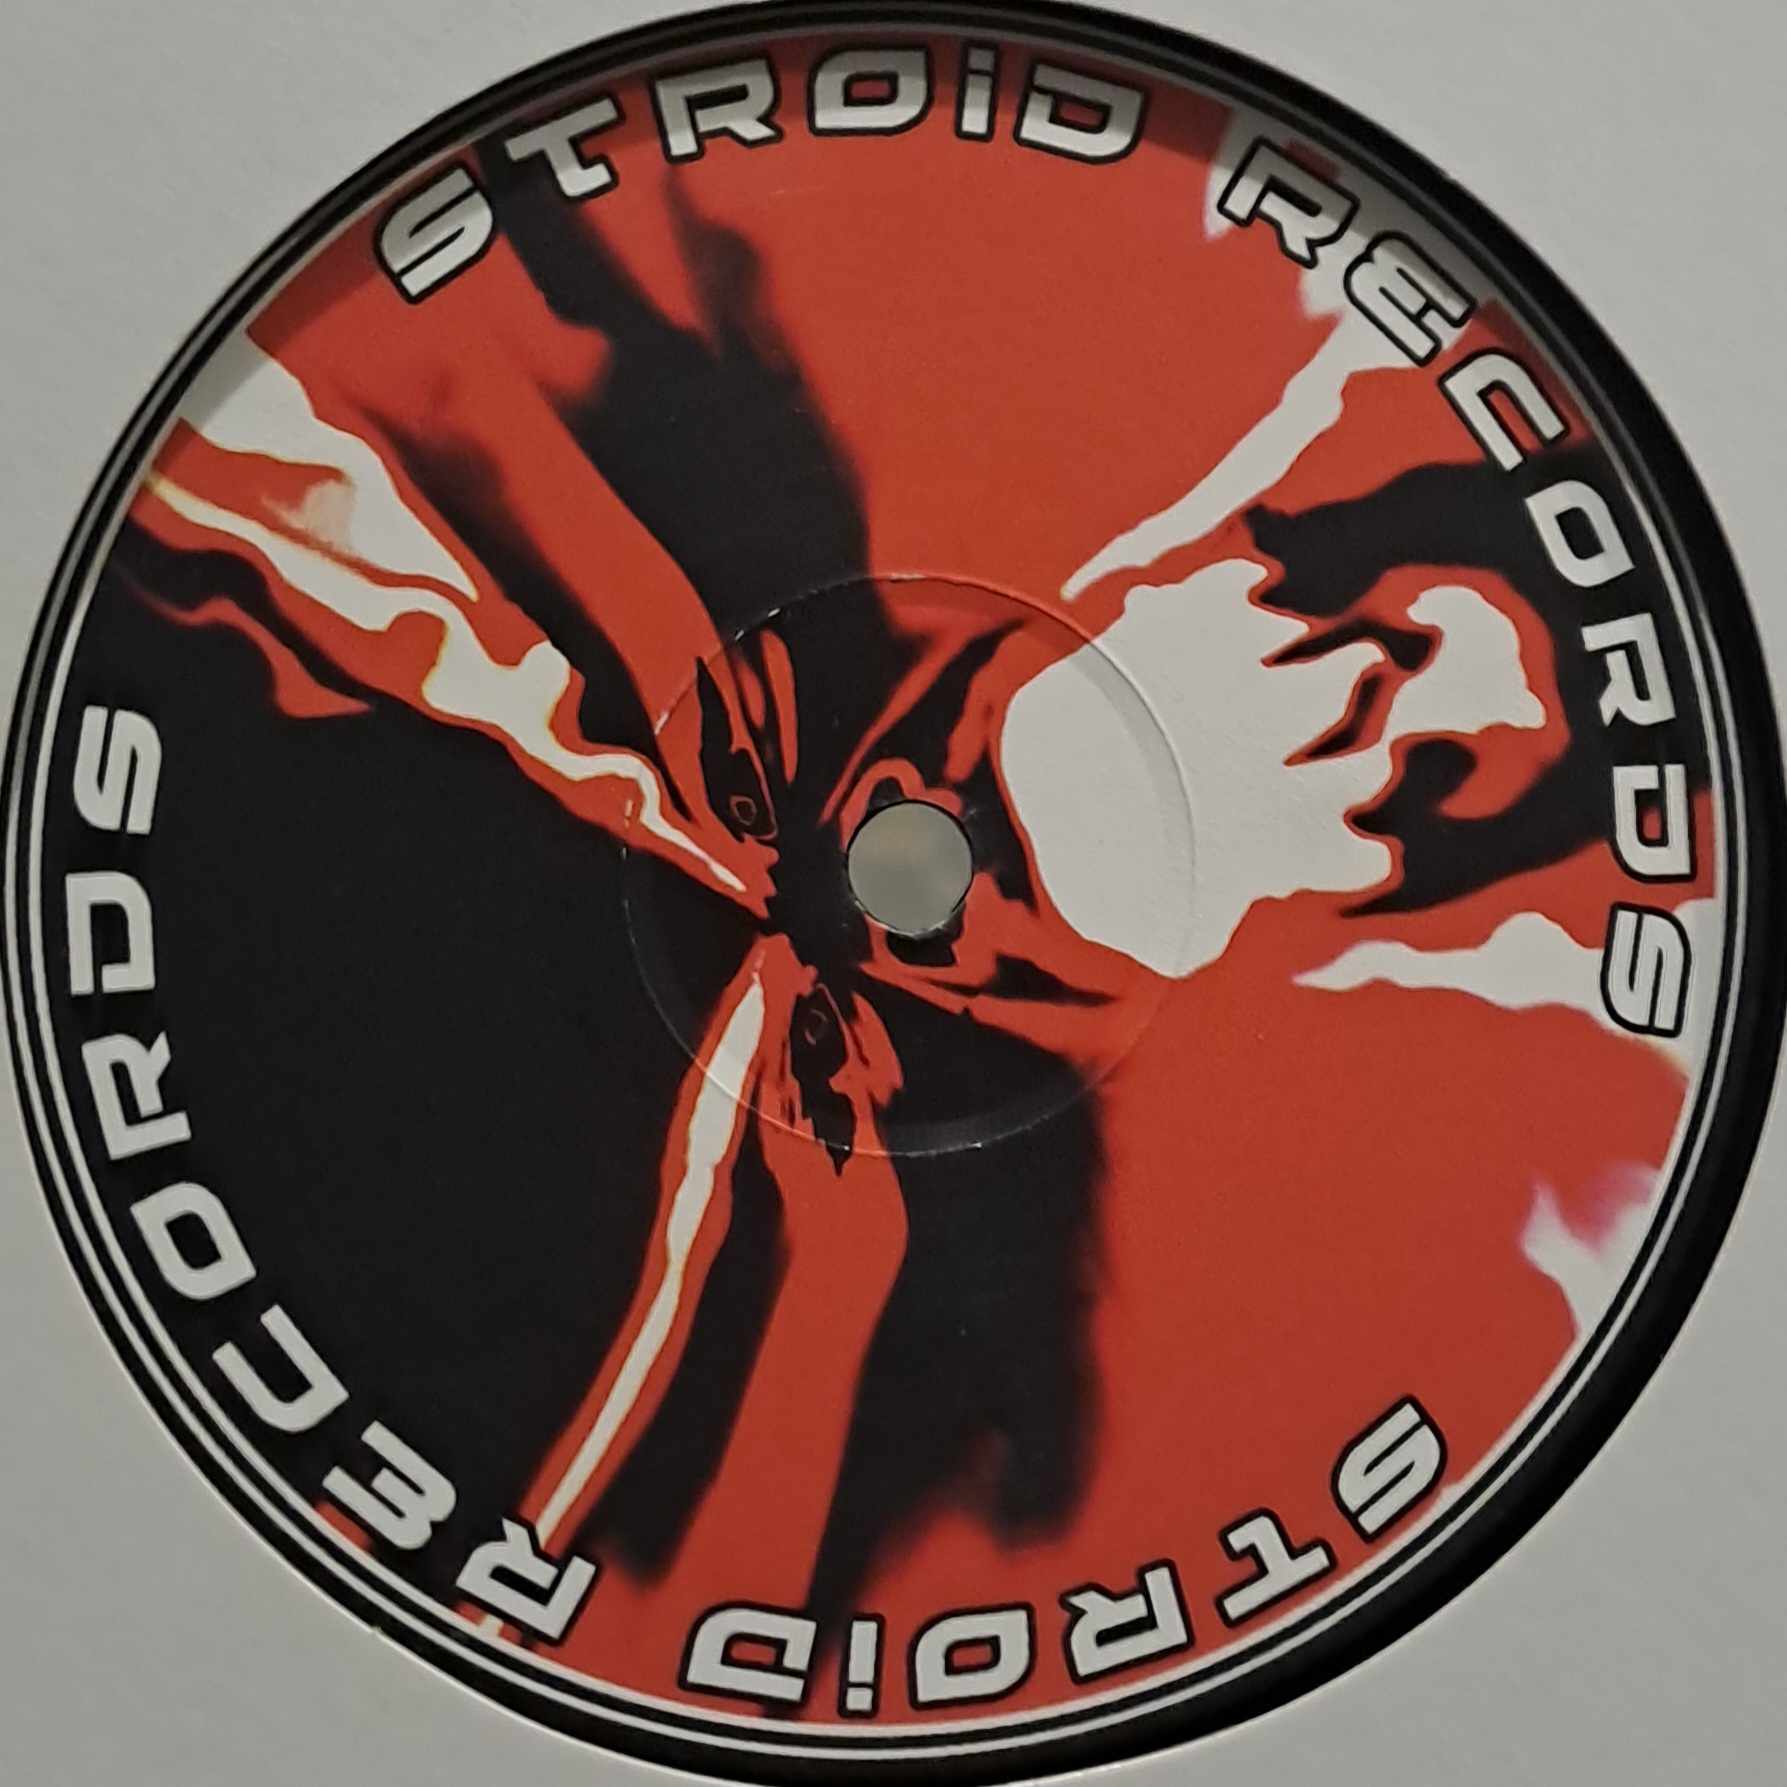 Stroid 01 RP - vinyle hardcore